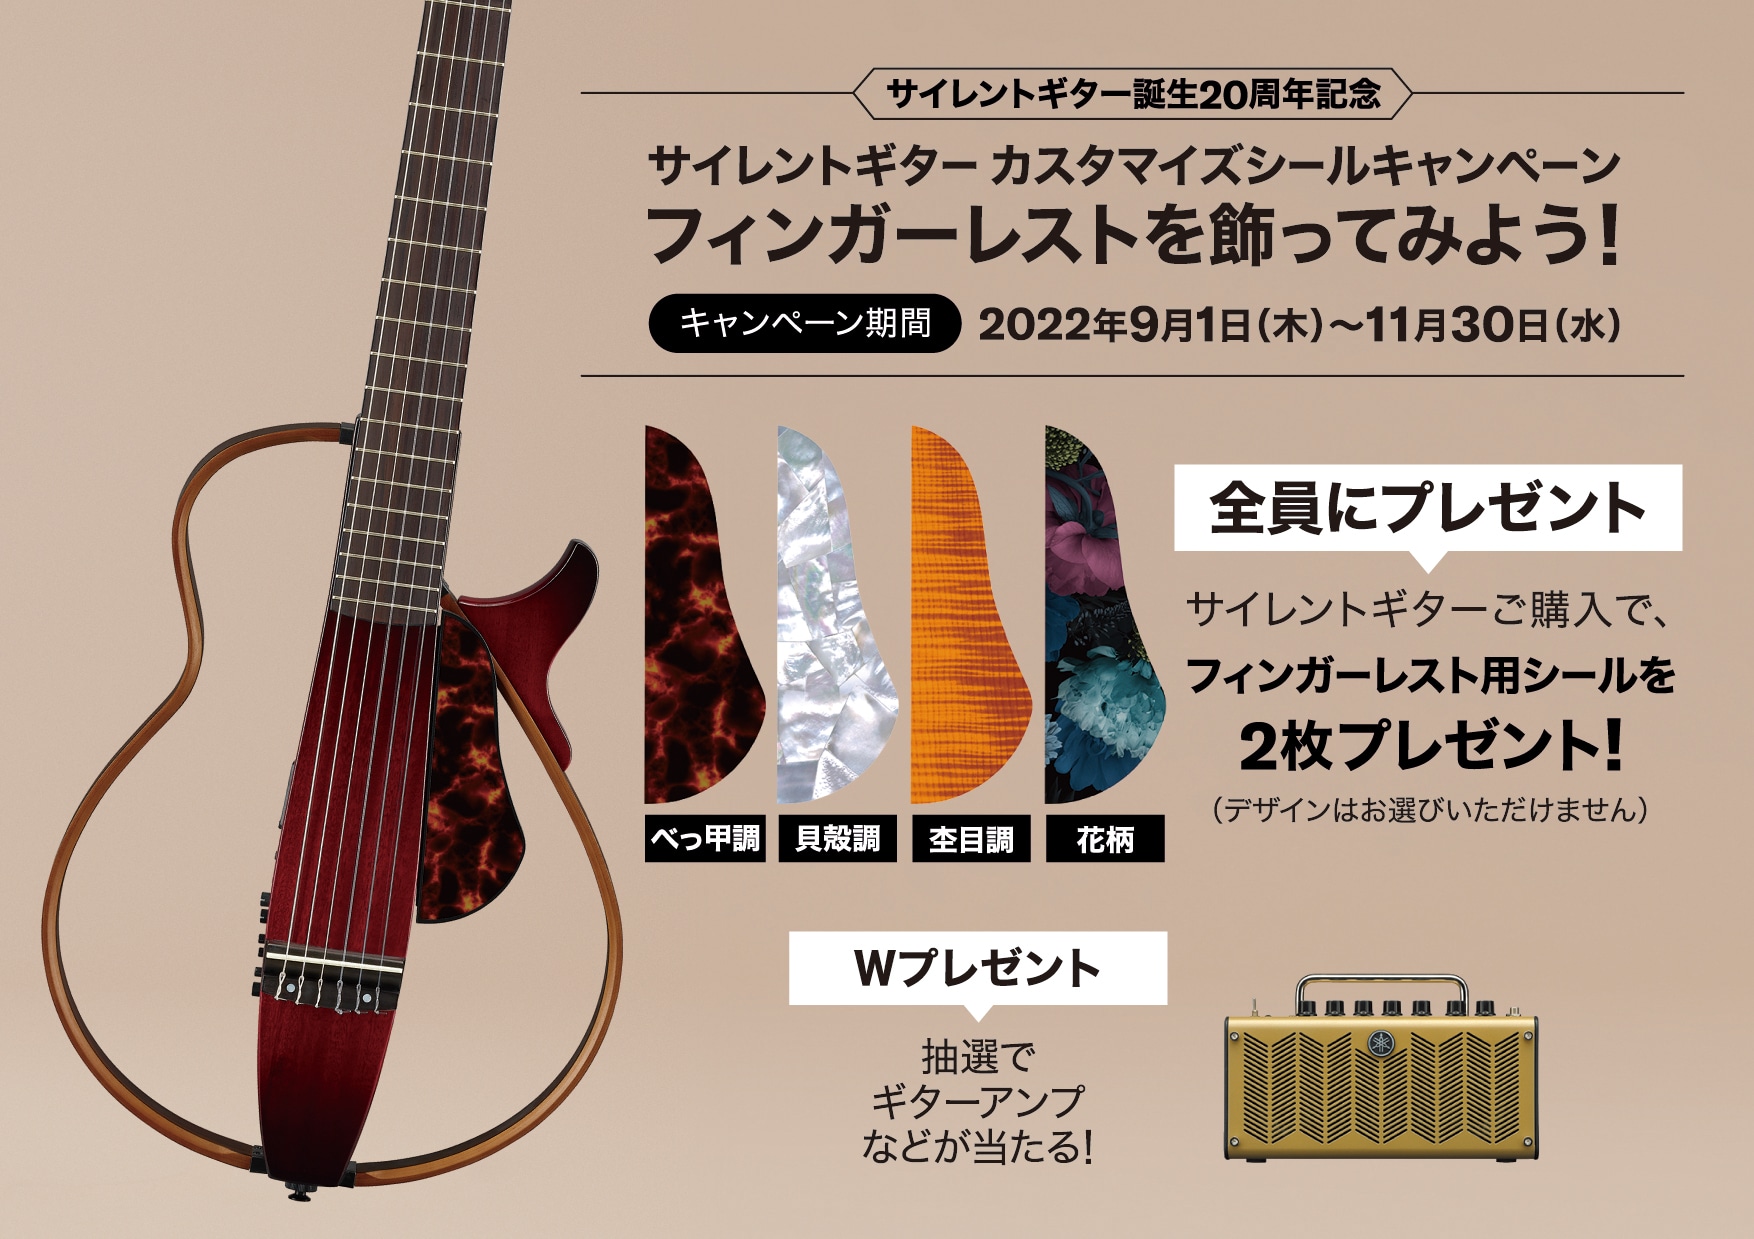 ヤマハ | サイレントギター™カスタマイズシールキャンペーン - ギター 